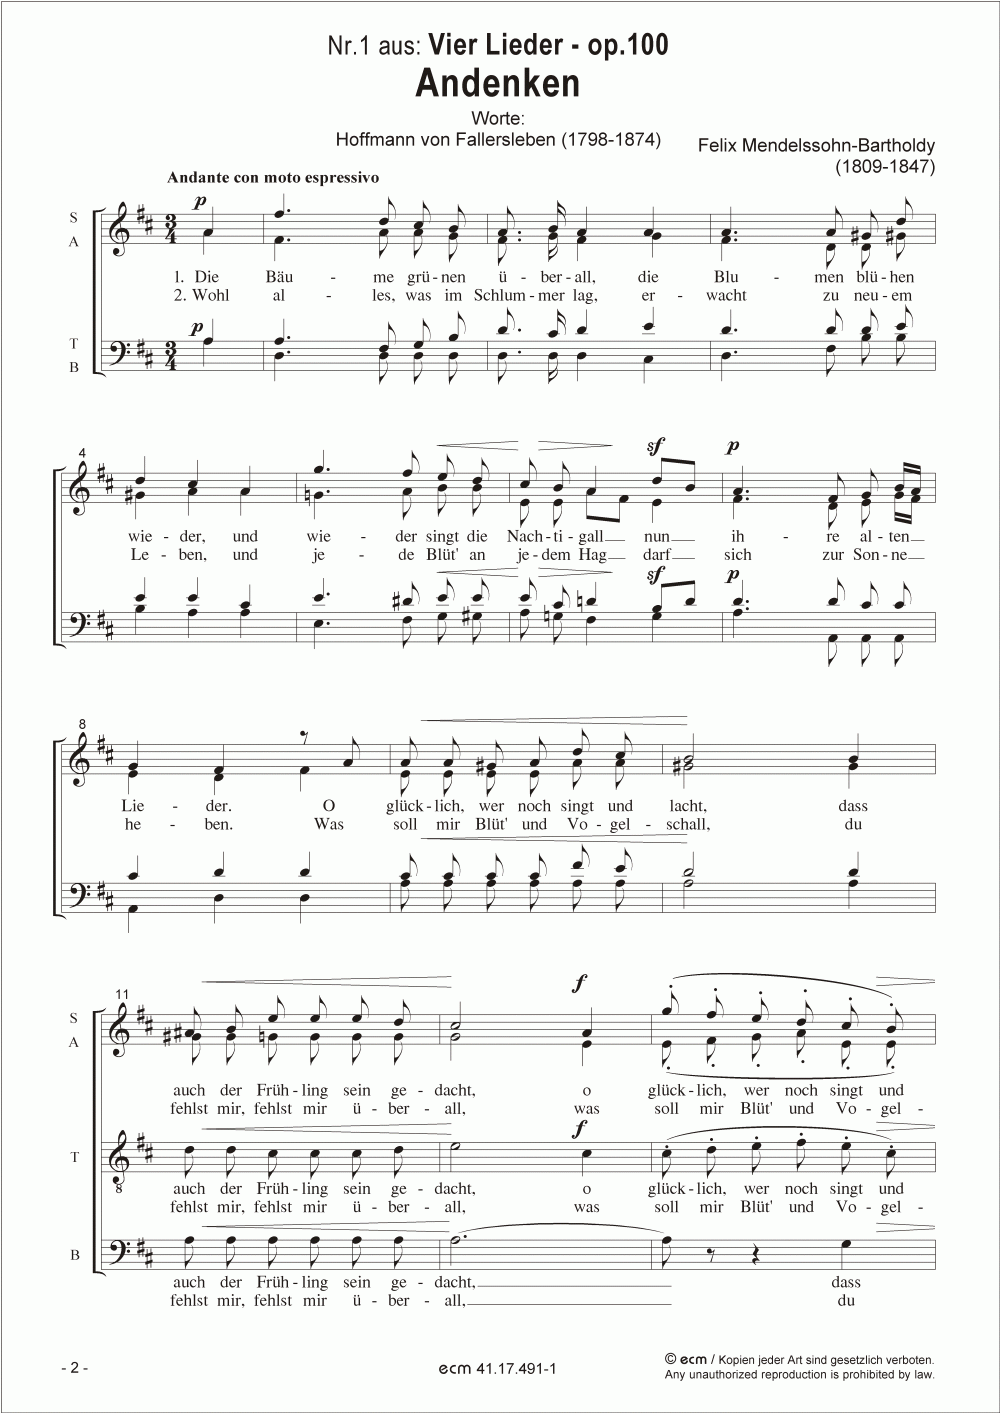 Andenken (op.100, Nr.1)